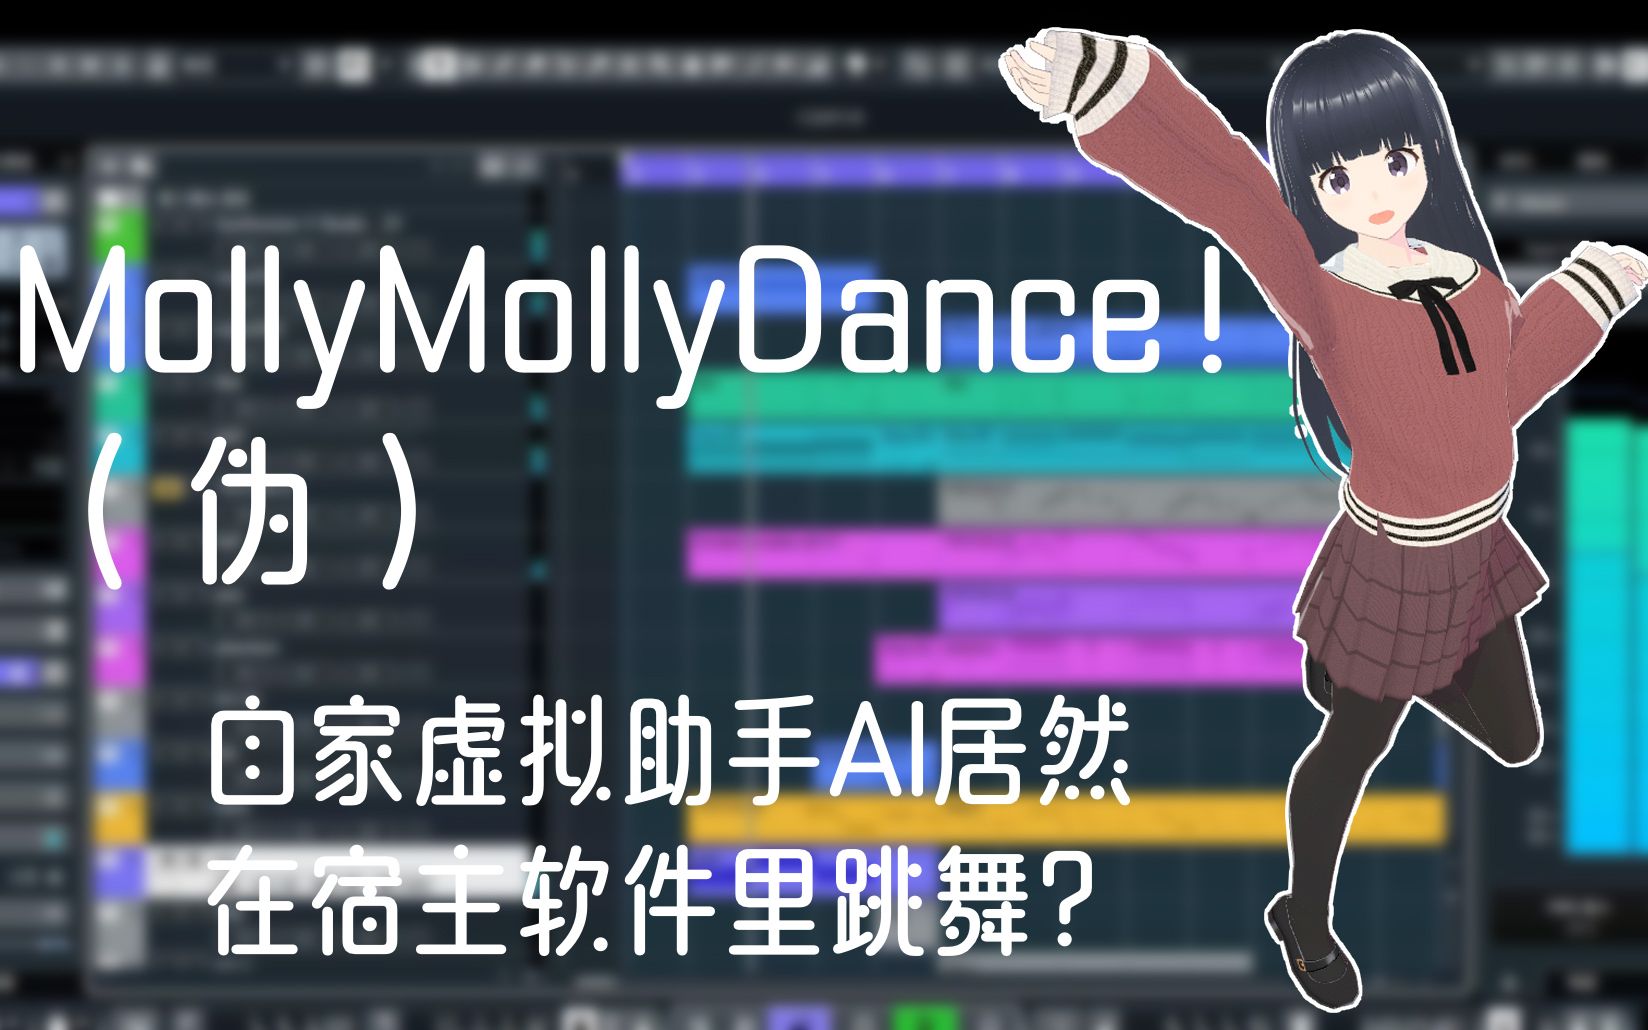 【MollyMollyDance！】看到自家虚拟ai助手跳舞太可爱，忍不住给她写了一首原创配舞 【MMD+短原创曲】